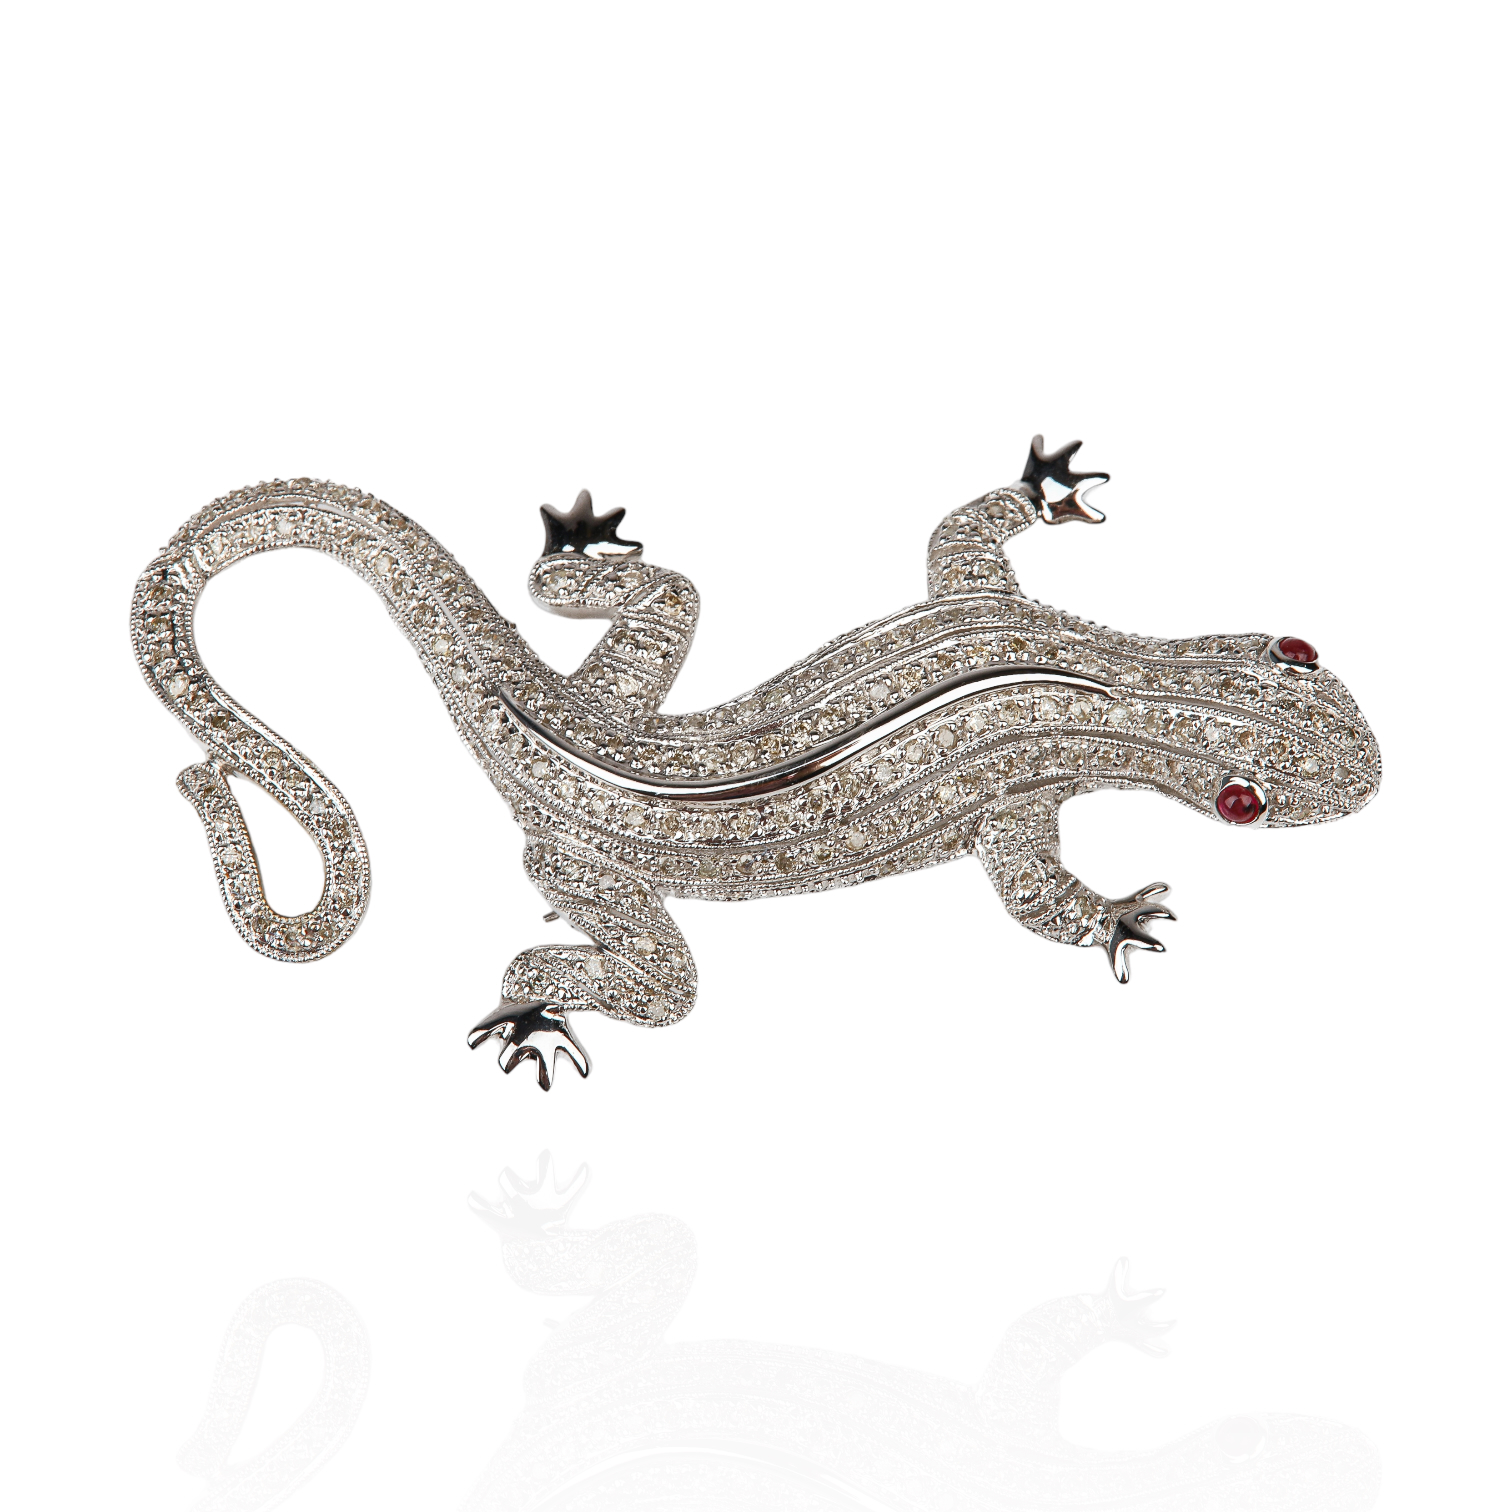 A 14K White Gold Diamond Pave Gecko